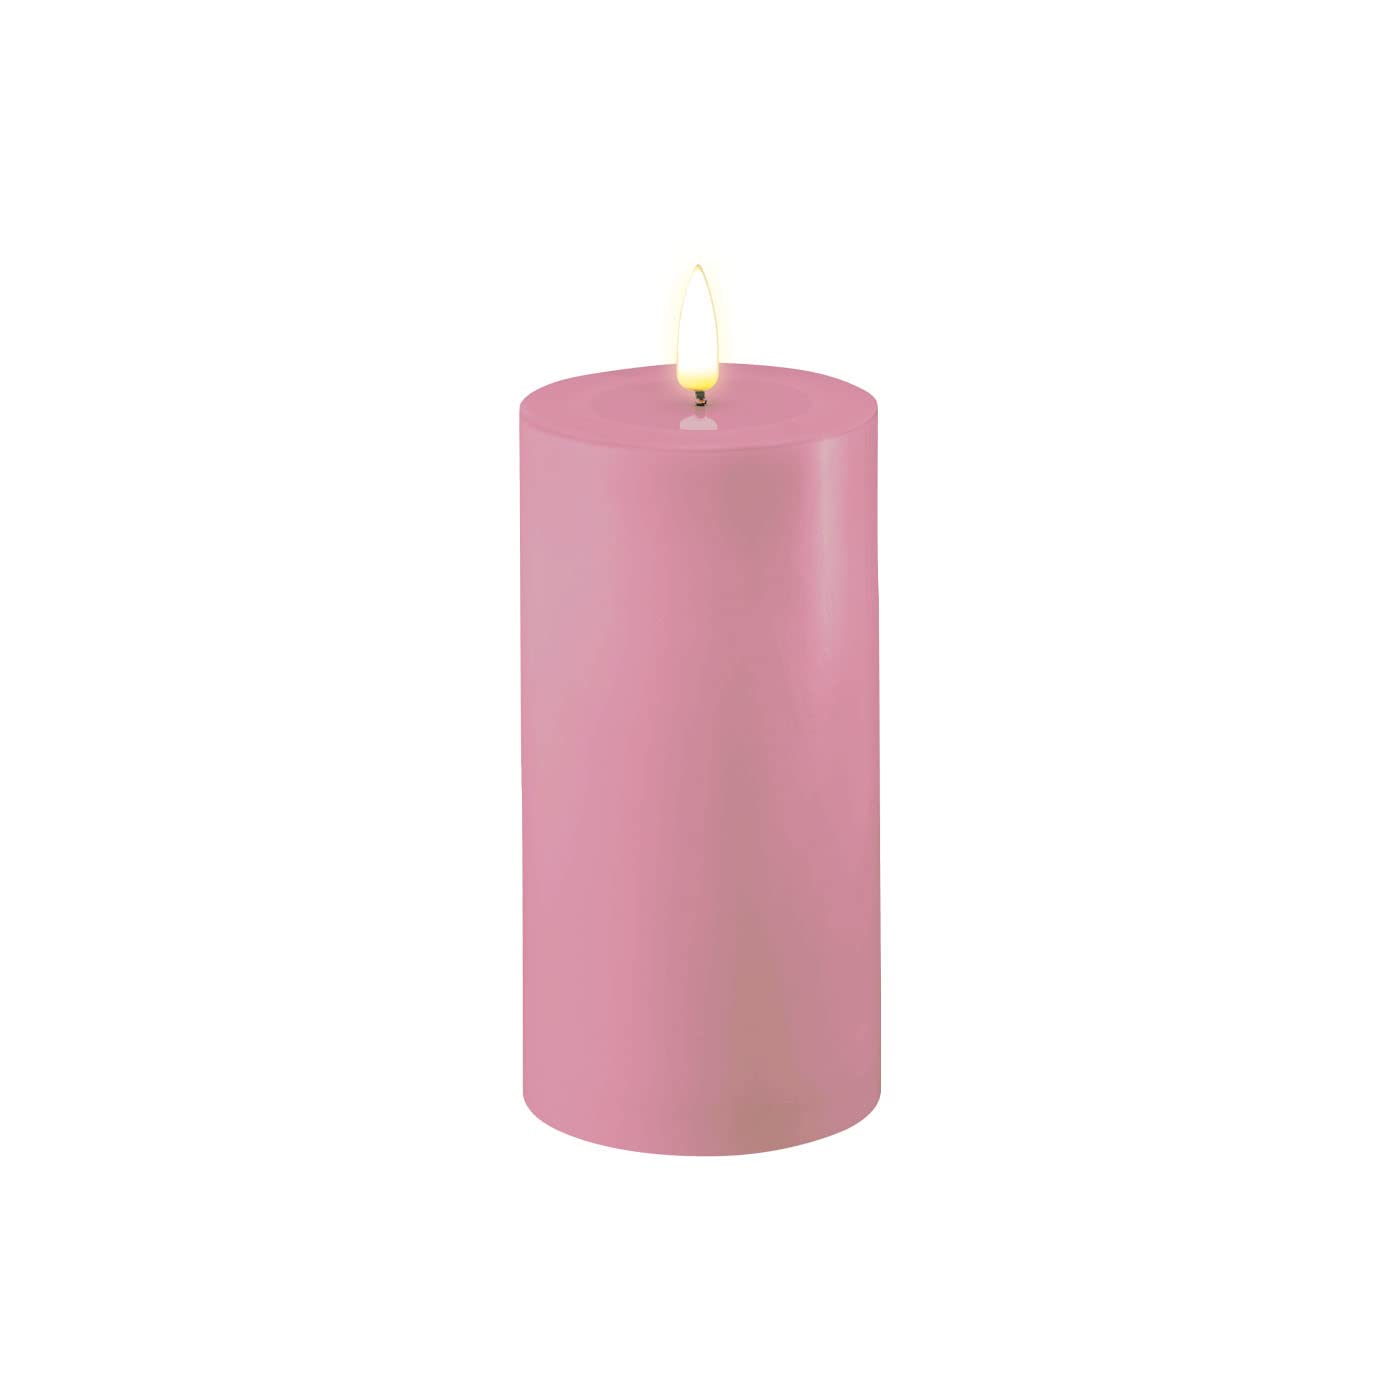 ReWu LED Kerze Deluxe Homeart, Indoor LED-Kerze mit realistischer Flamme auf einem Echtwachsspiegel, warmweißes Licht - Lavendel 7,5 x 15 cm